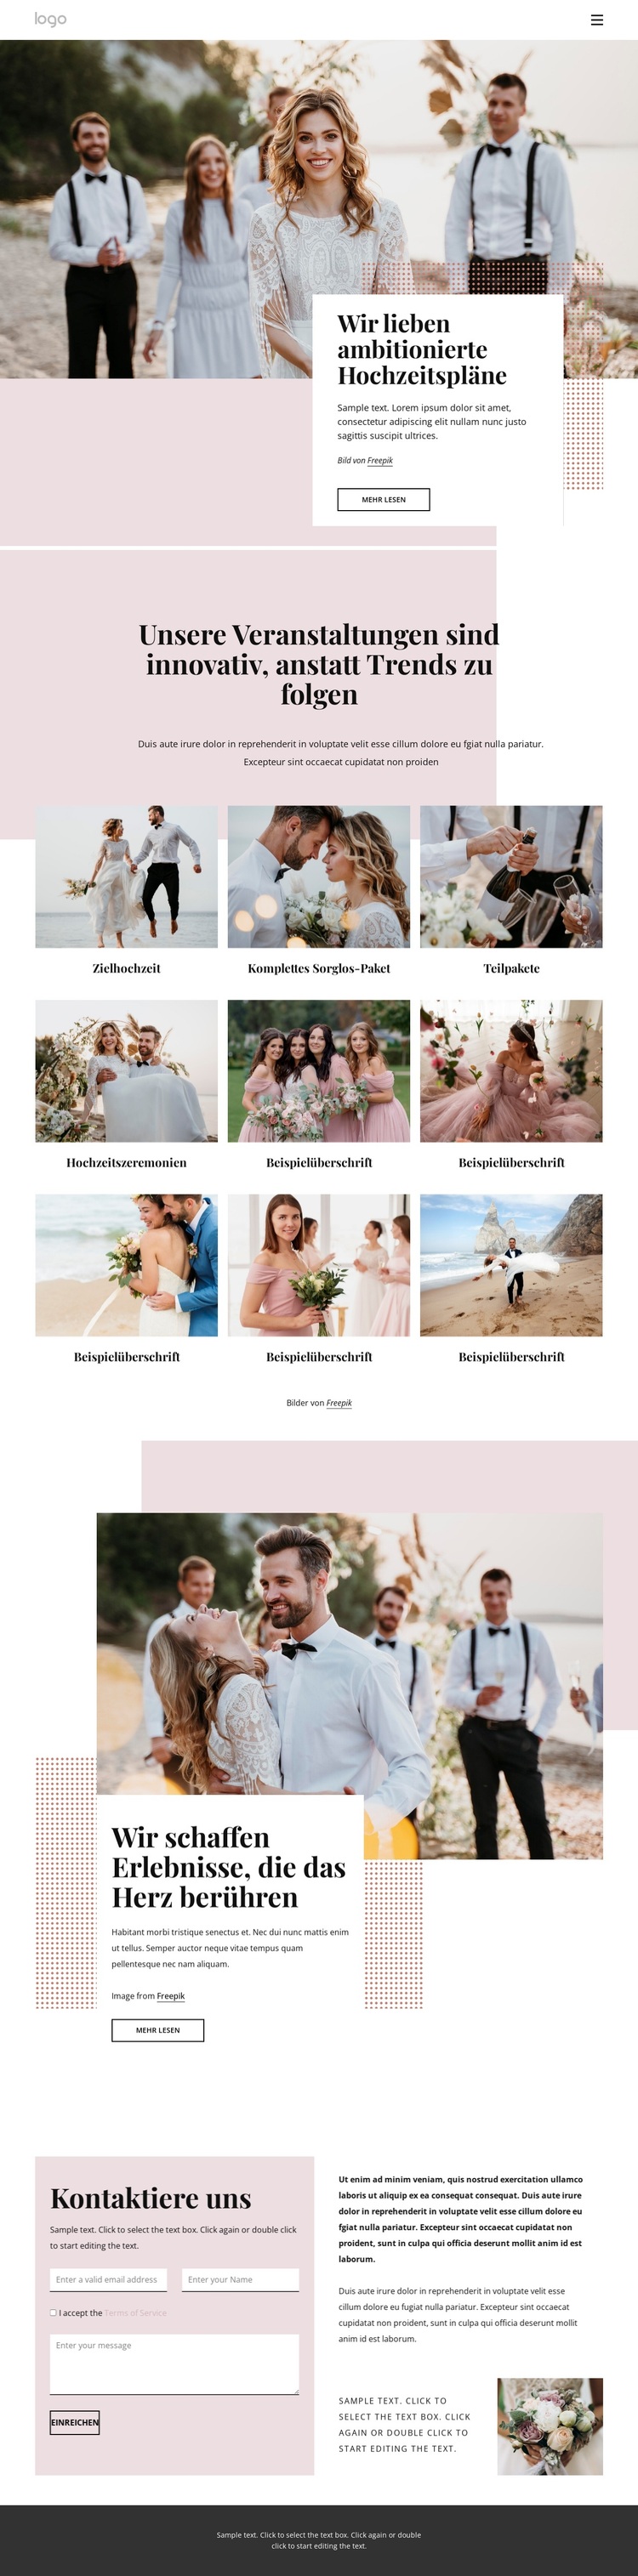 Wir lieben ambitionierte Hochzeitspläne WordPress-Theme